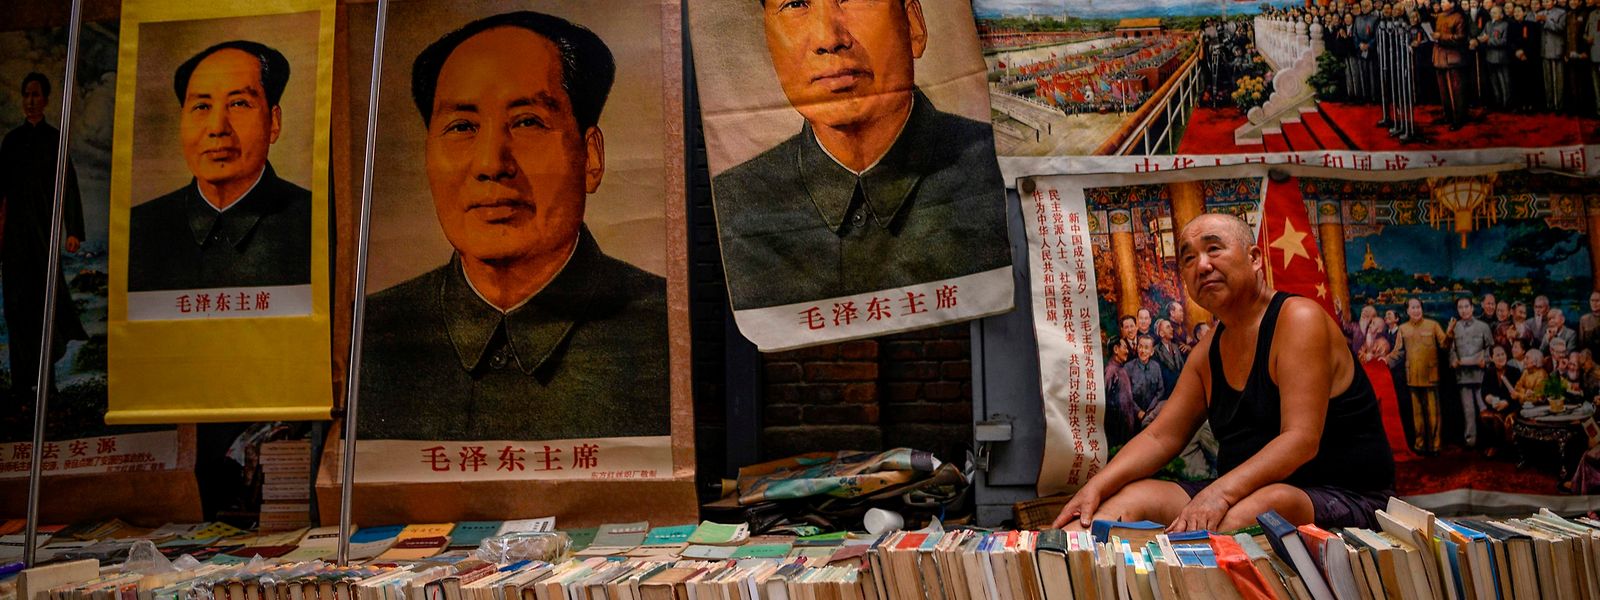 Bücher, Poster, Flaggen und vieles mehr von Mao Tsetung, dem Gründer der Volksrepublik China, werden auch heute noch verkauft.